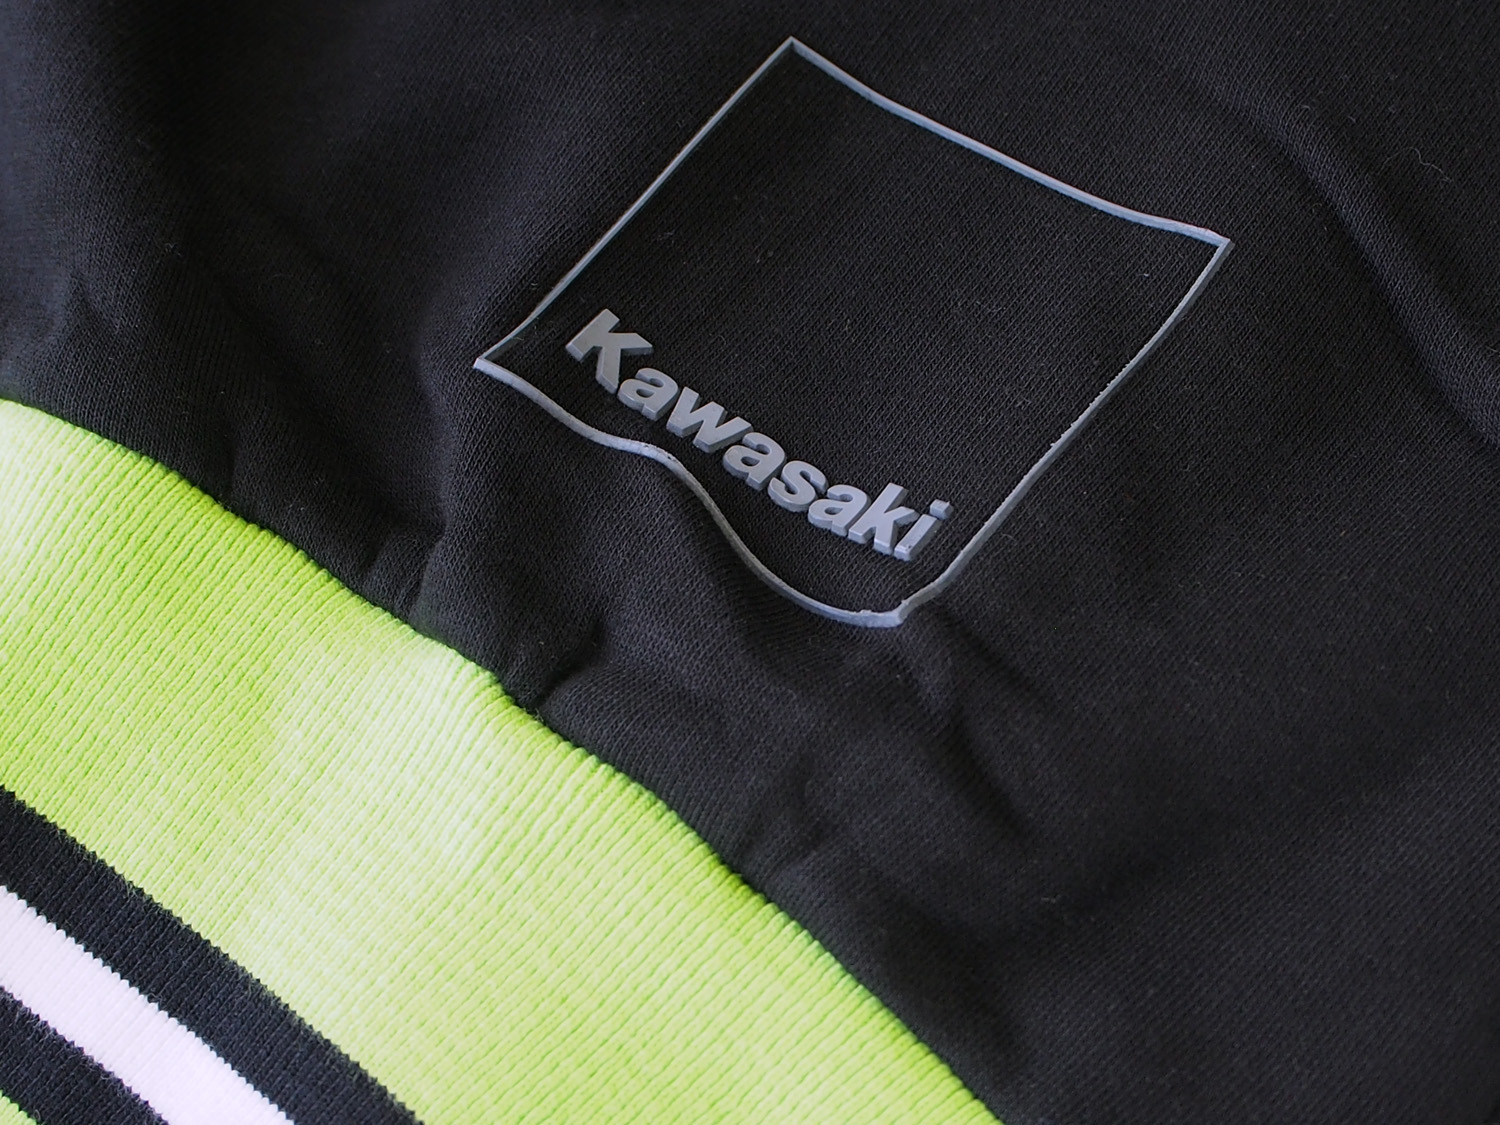 Kawasaki カワサキ レーシング SBK チーム ライフスタイル ライフスタイル ボンバージャケット 画像